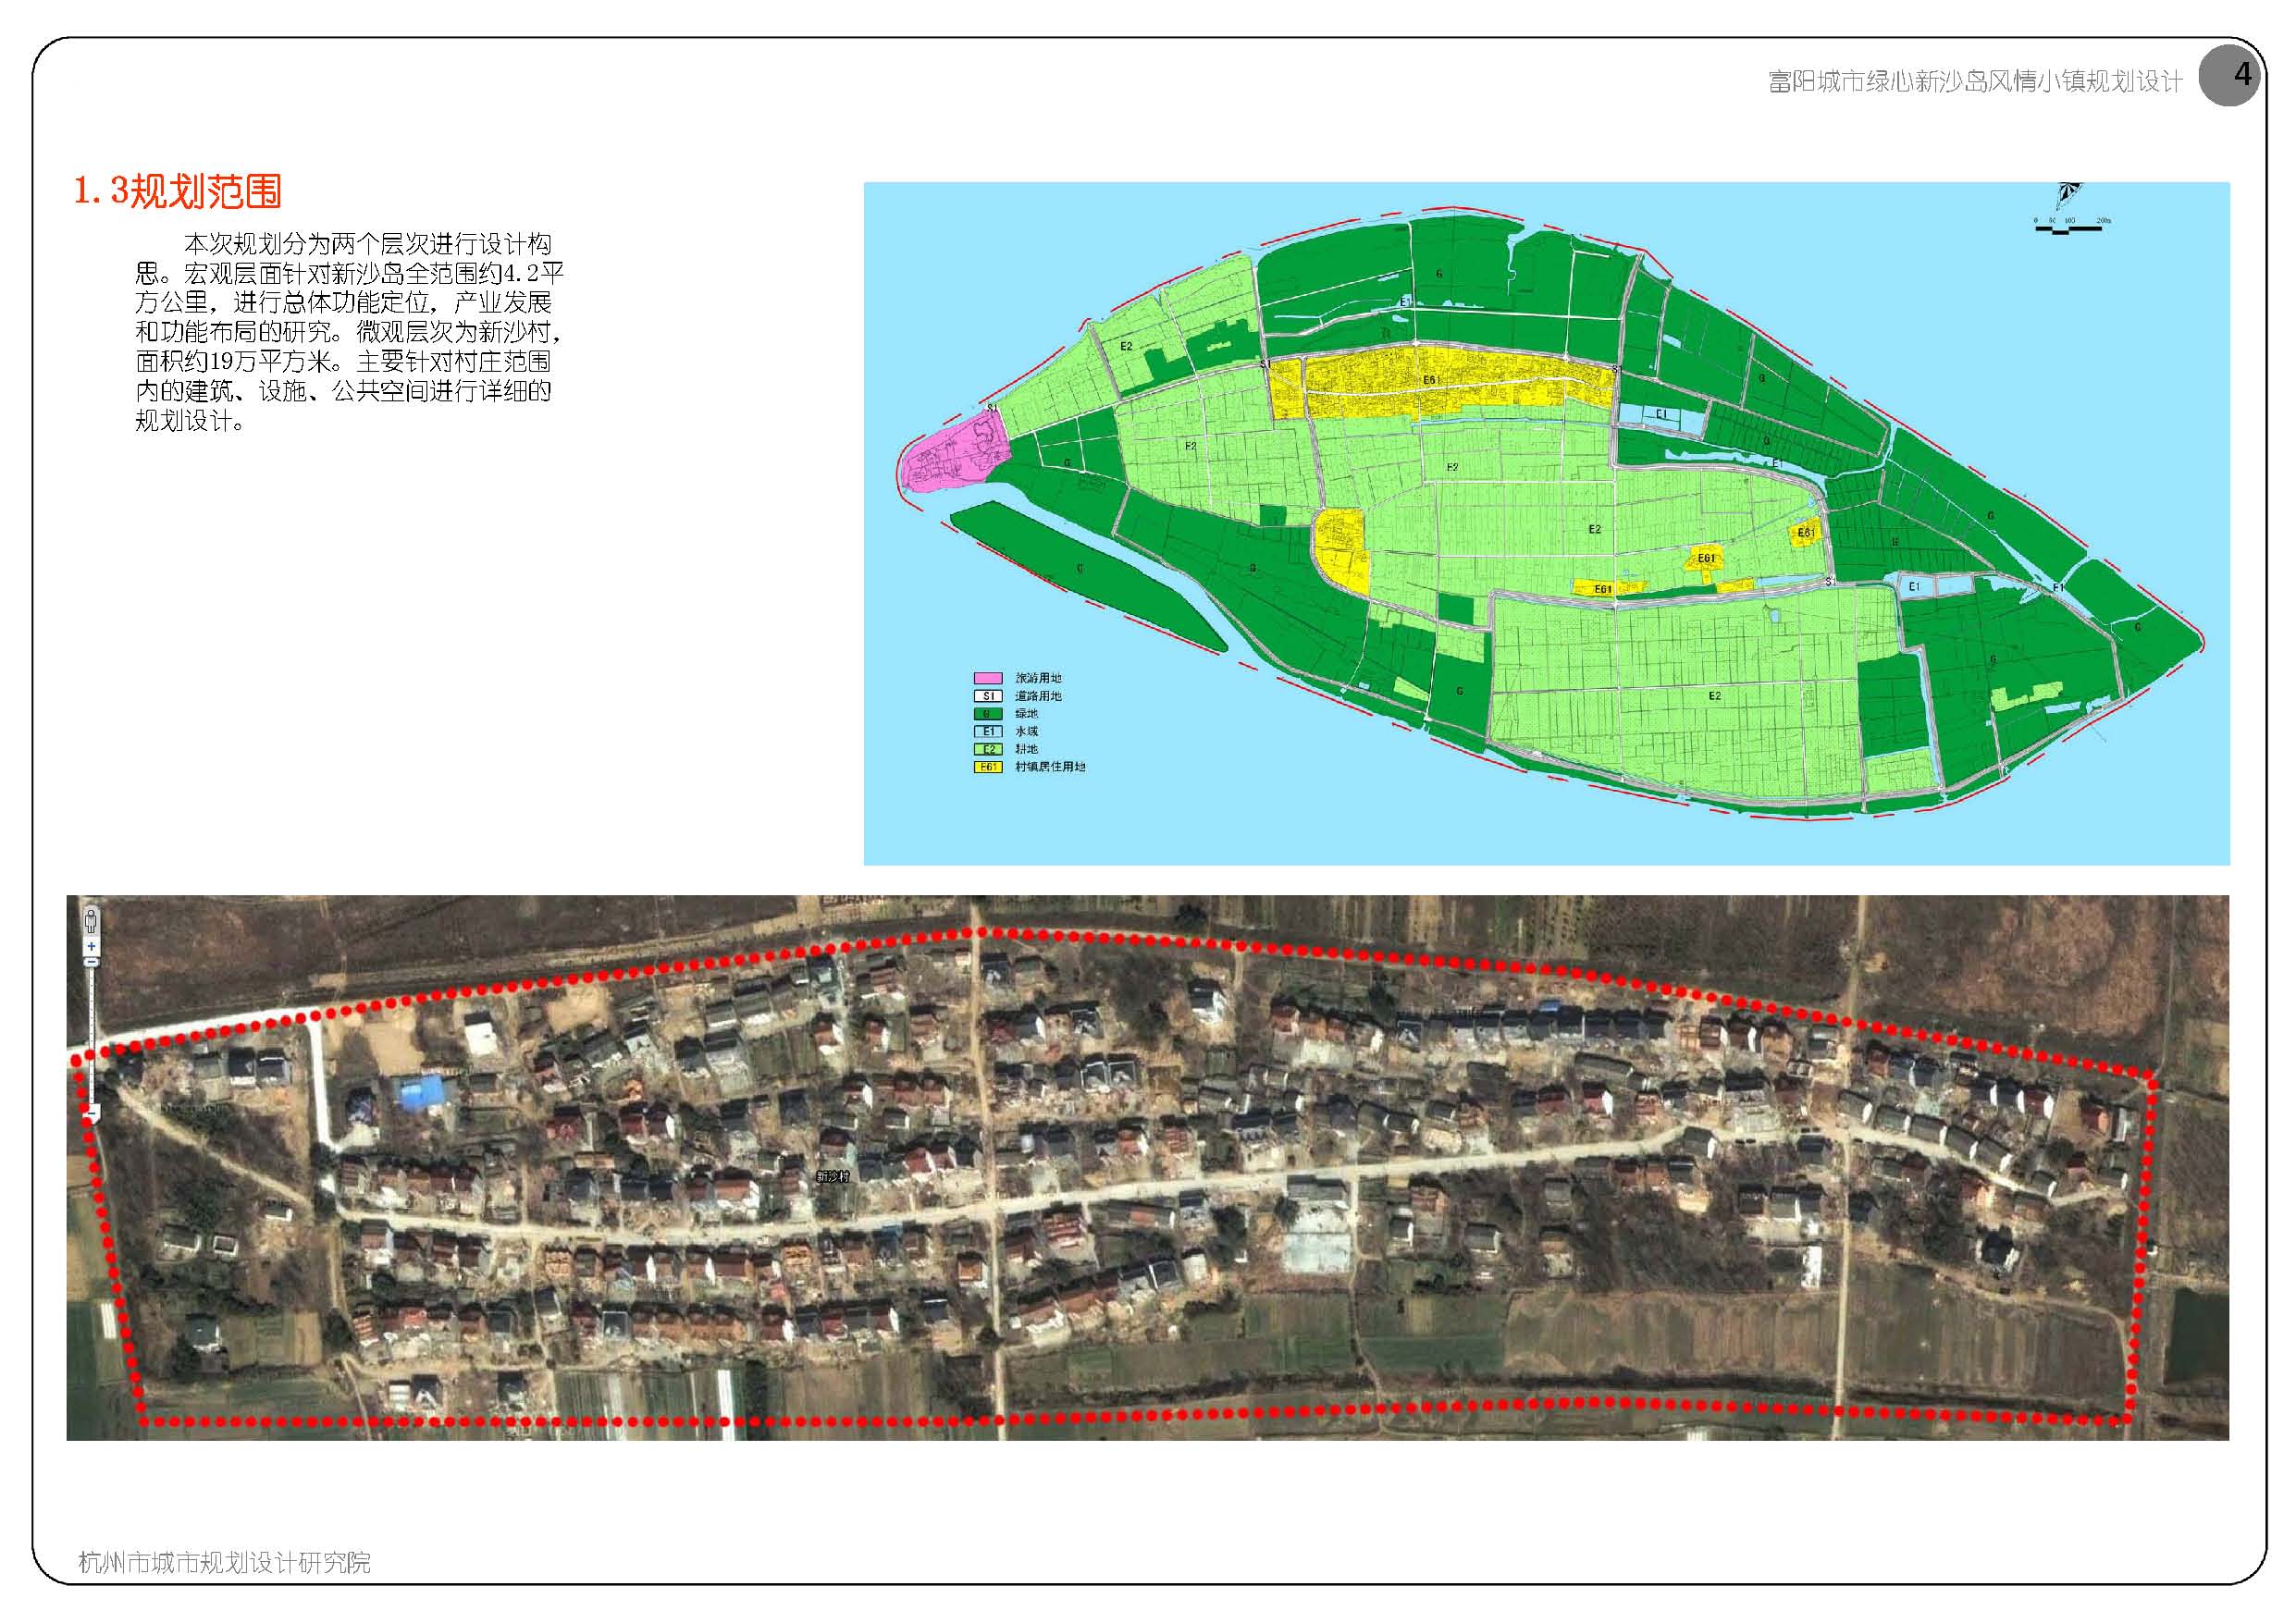 【杭州】“体验经济”风情小镇总体设计方案(jpg格式)